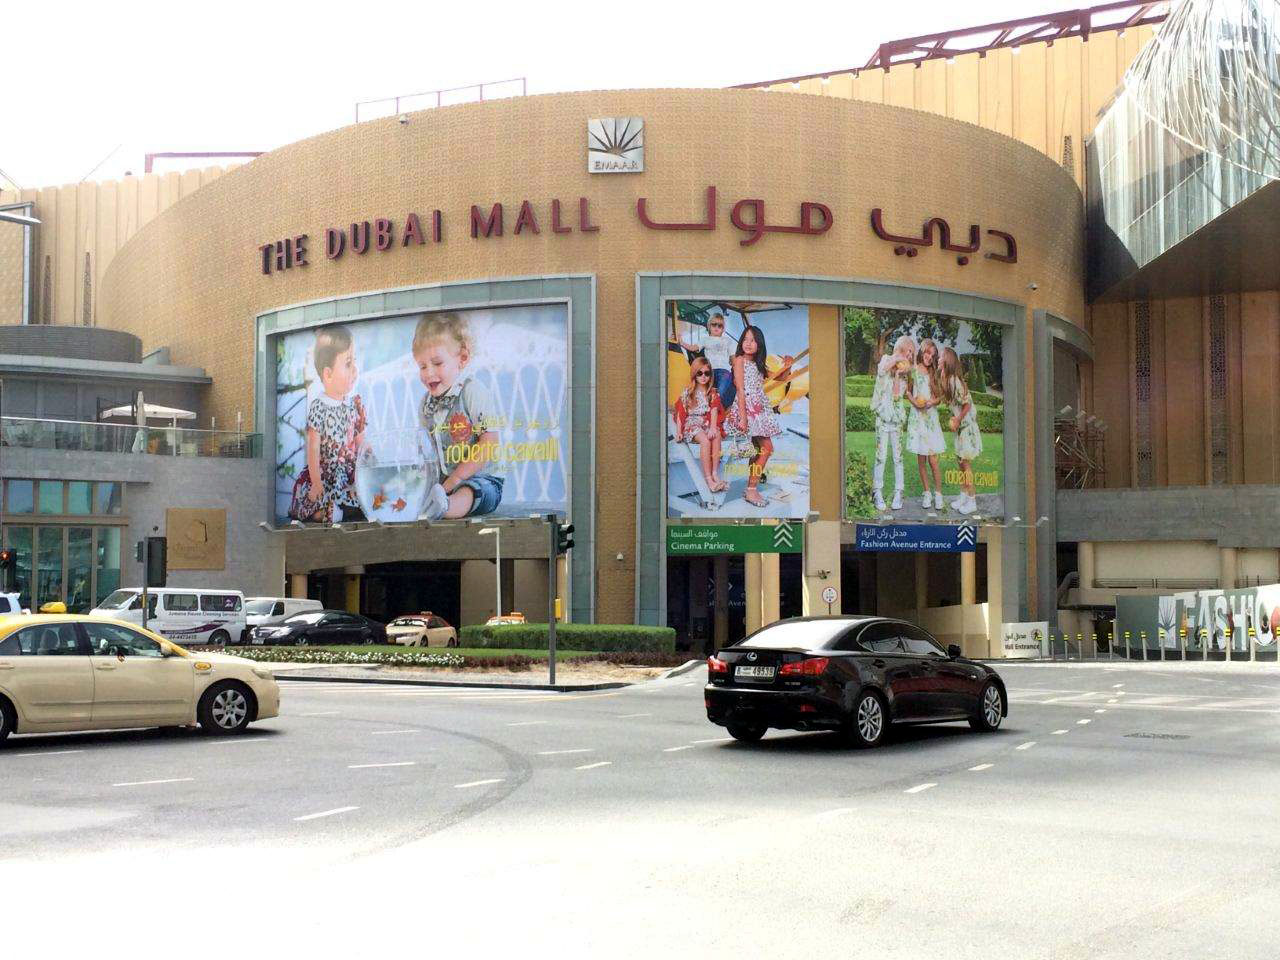 Pubblicità Dubai Mall